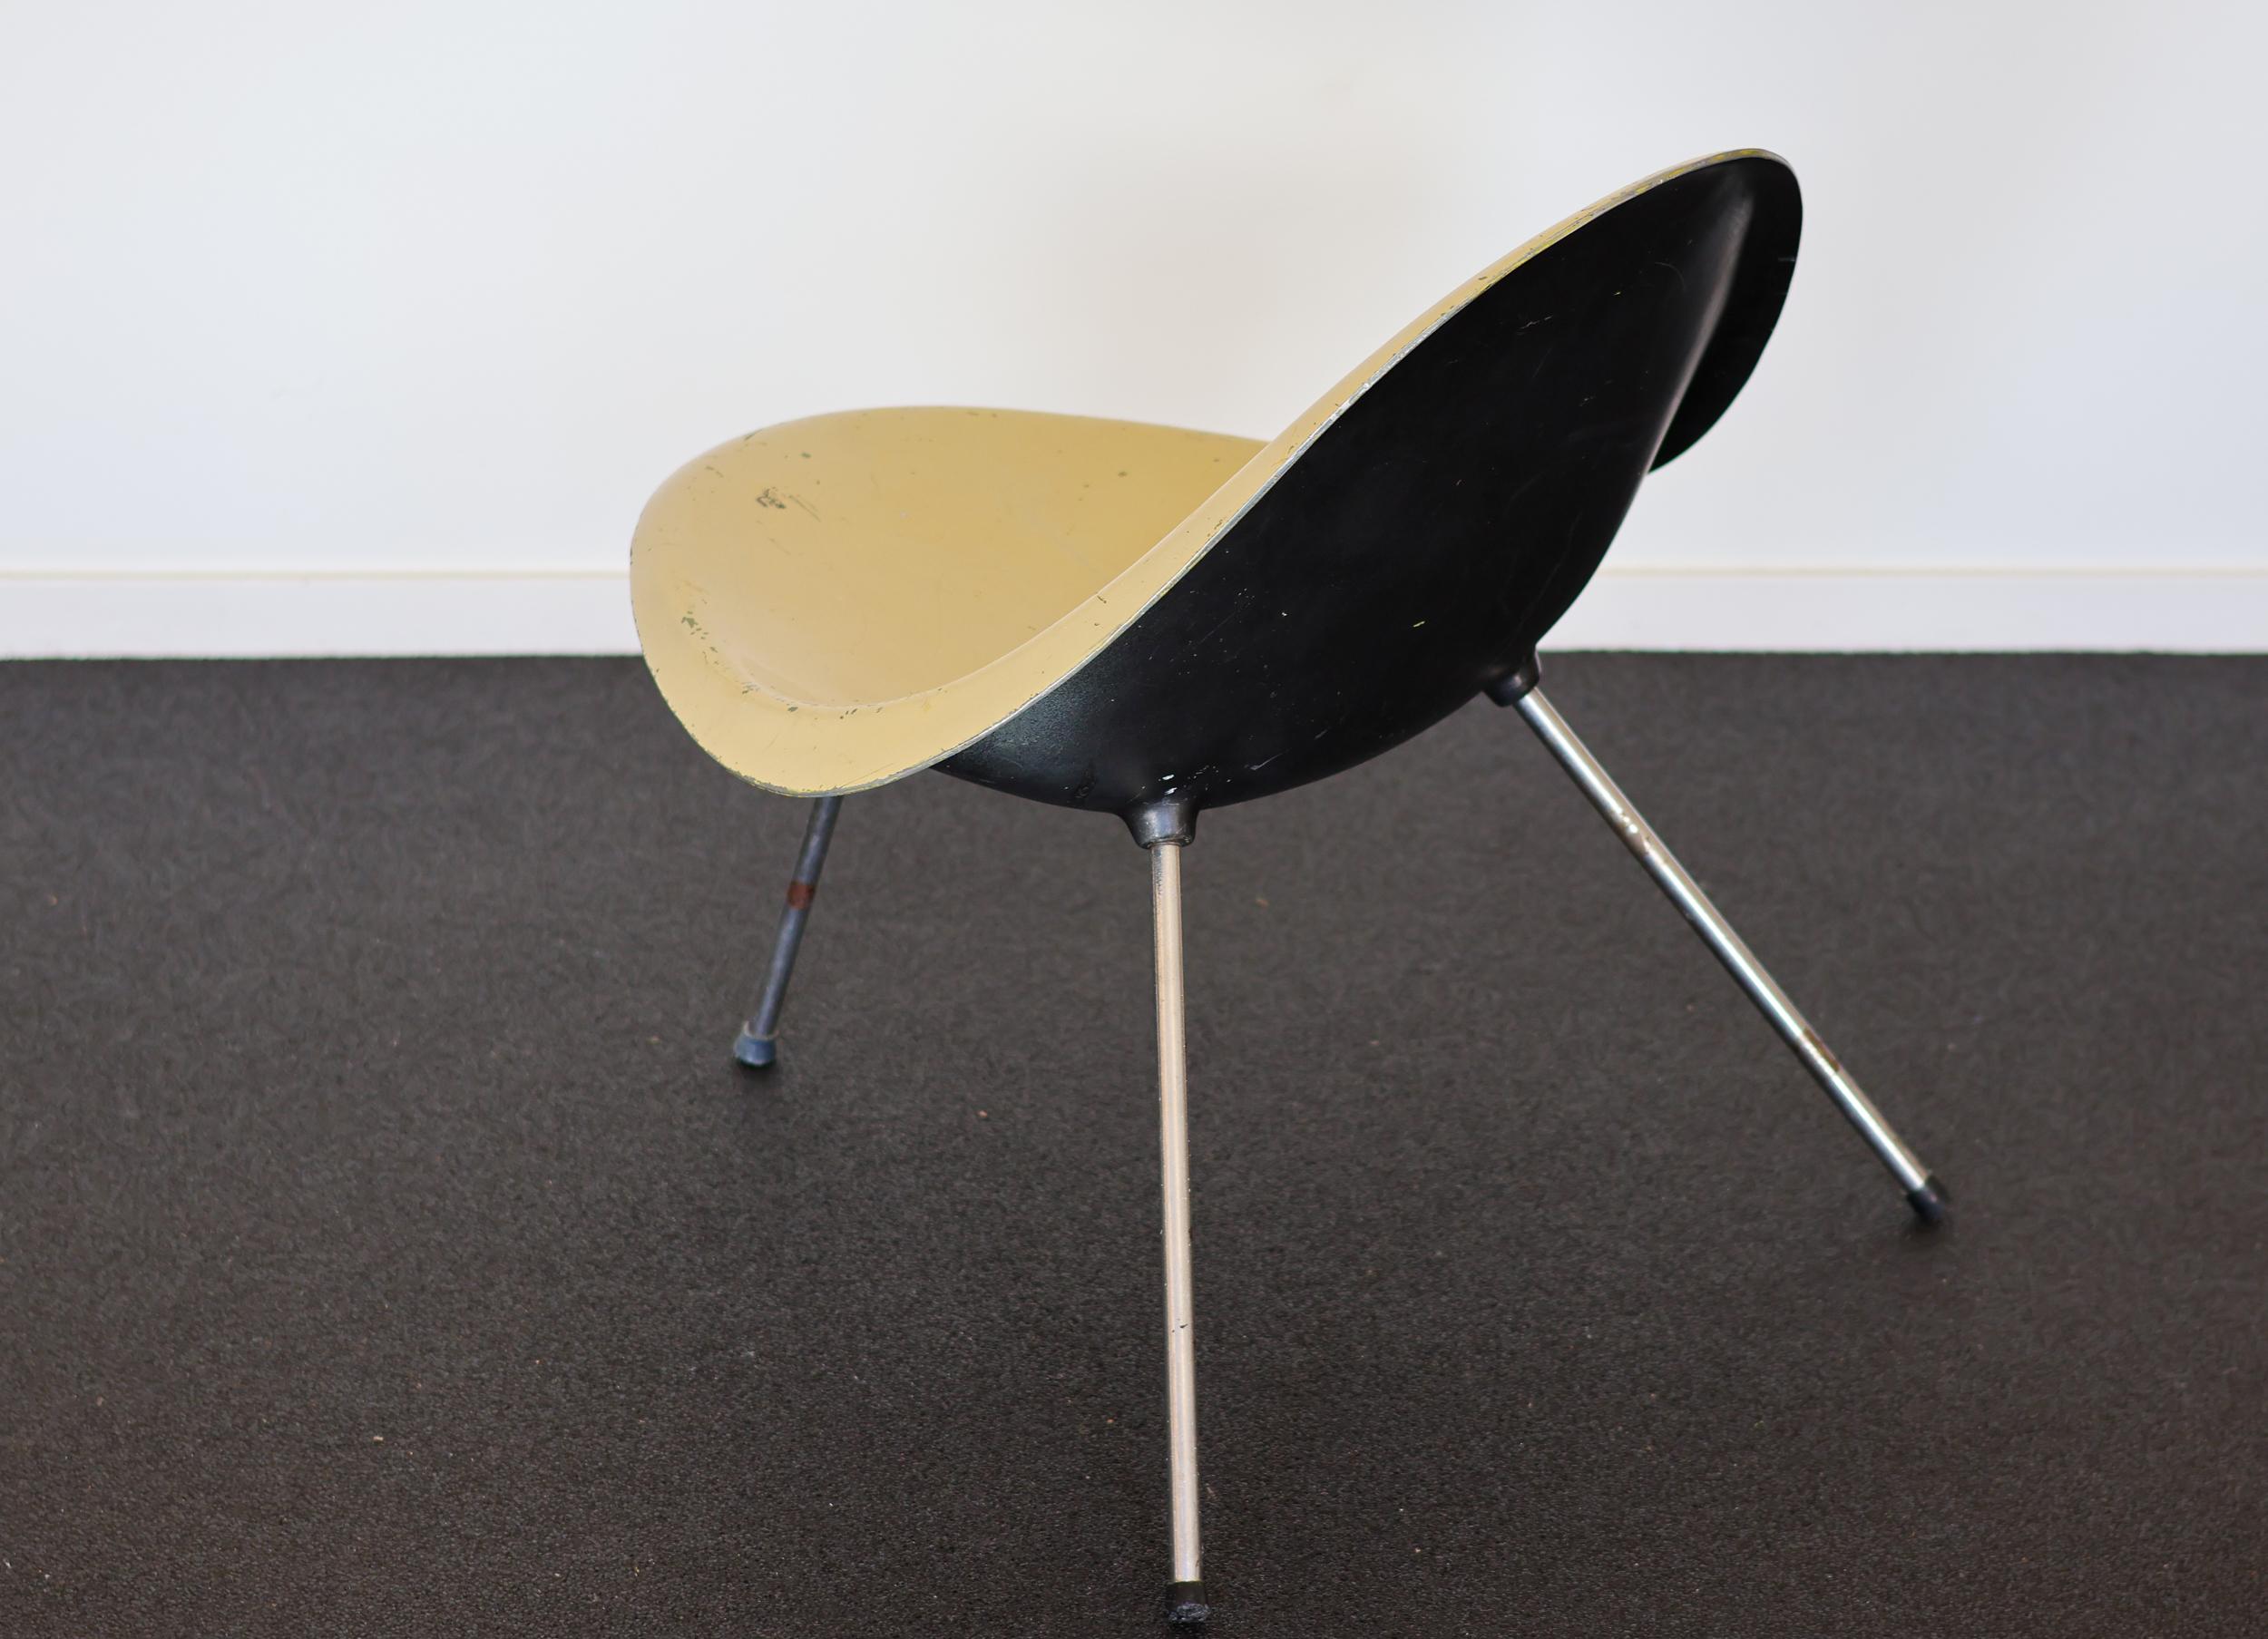 Sehr wichtiger Stuhl aus geformtem Aluminium, entworfen 1953 von Poul Kjaerholm.
Dieser Stuhl war im Besitz der Schwester von Poul Kjaerholm. Der Stuhl ist im Catalogue Raisonné von Michael Sheridan auf Seite 64 abgebildet. Es wurden weniger als 10